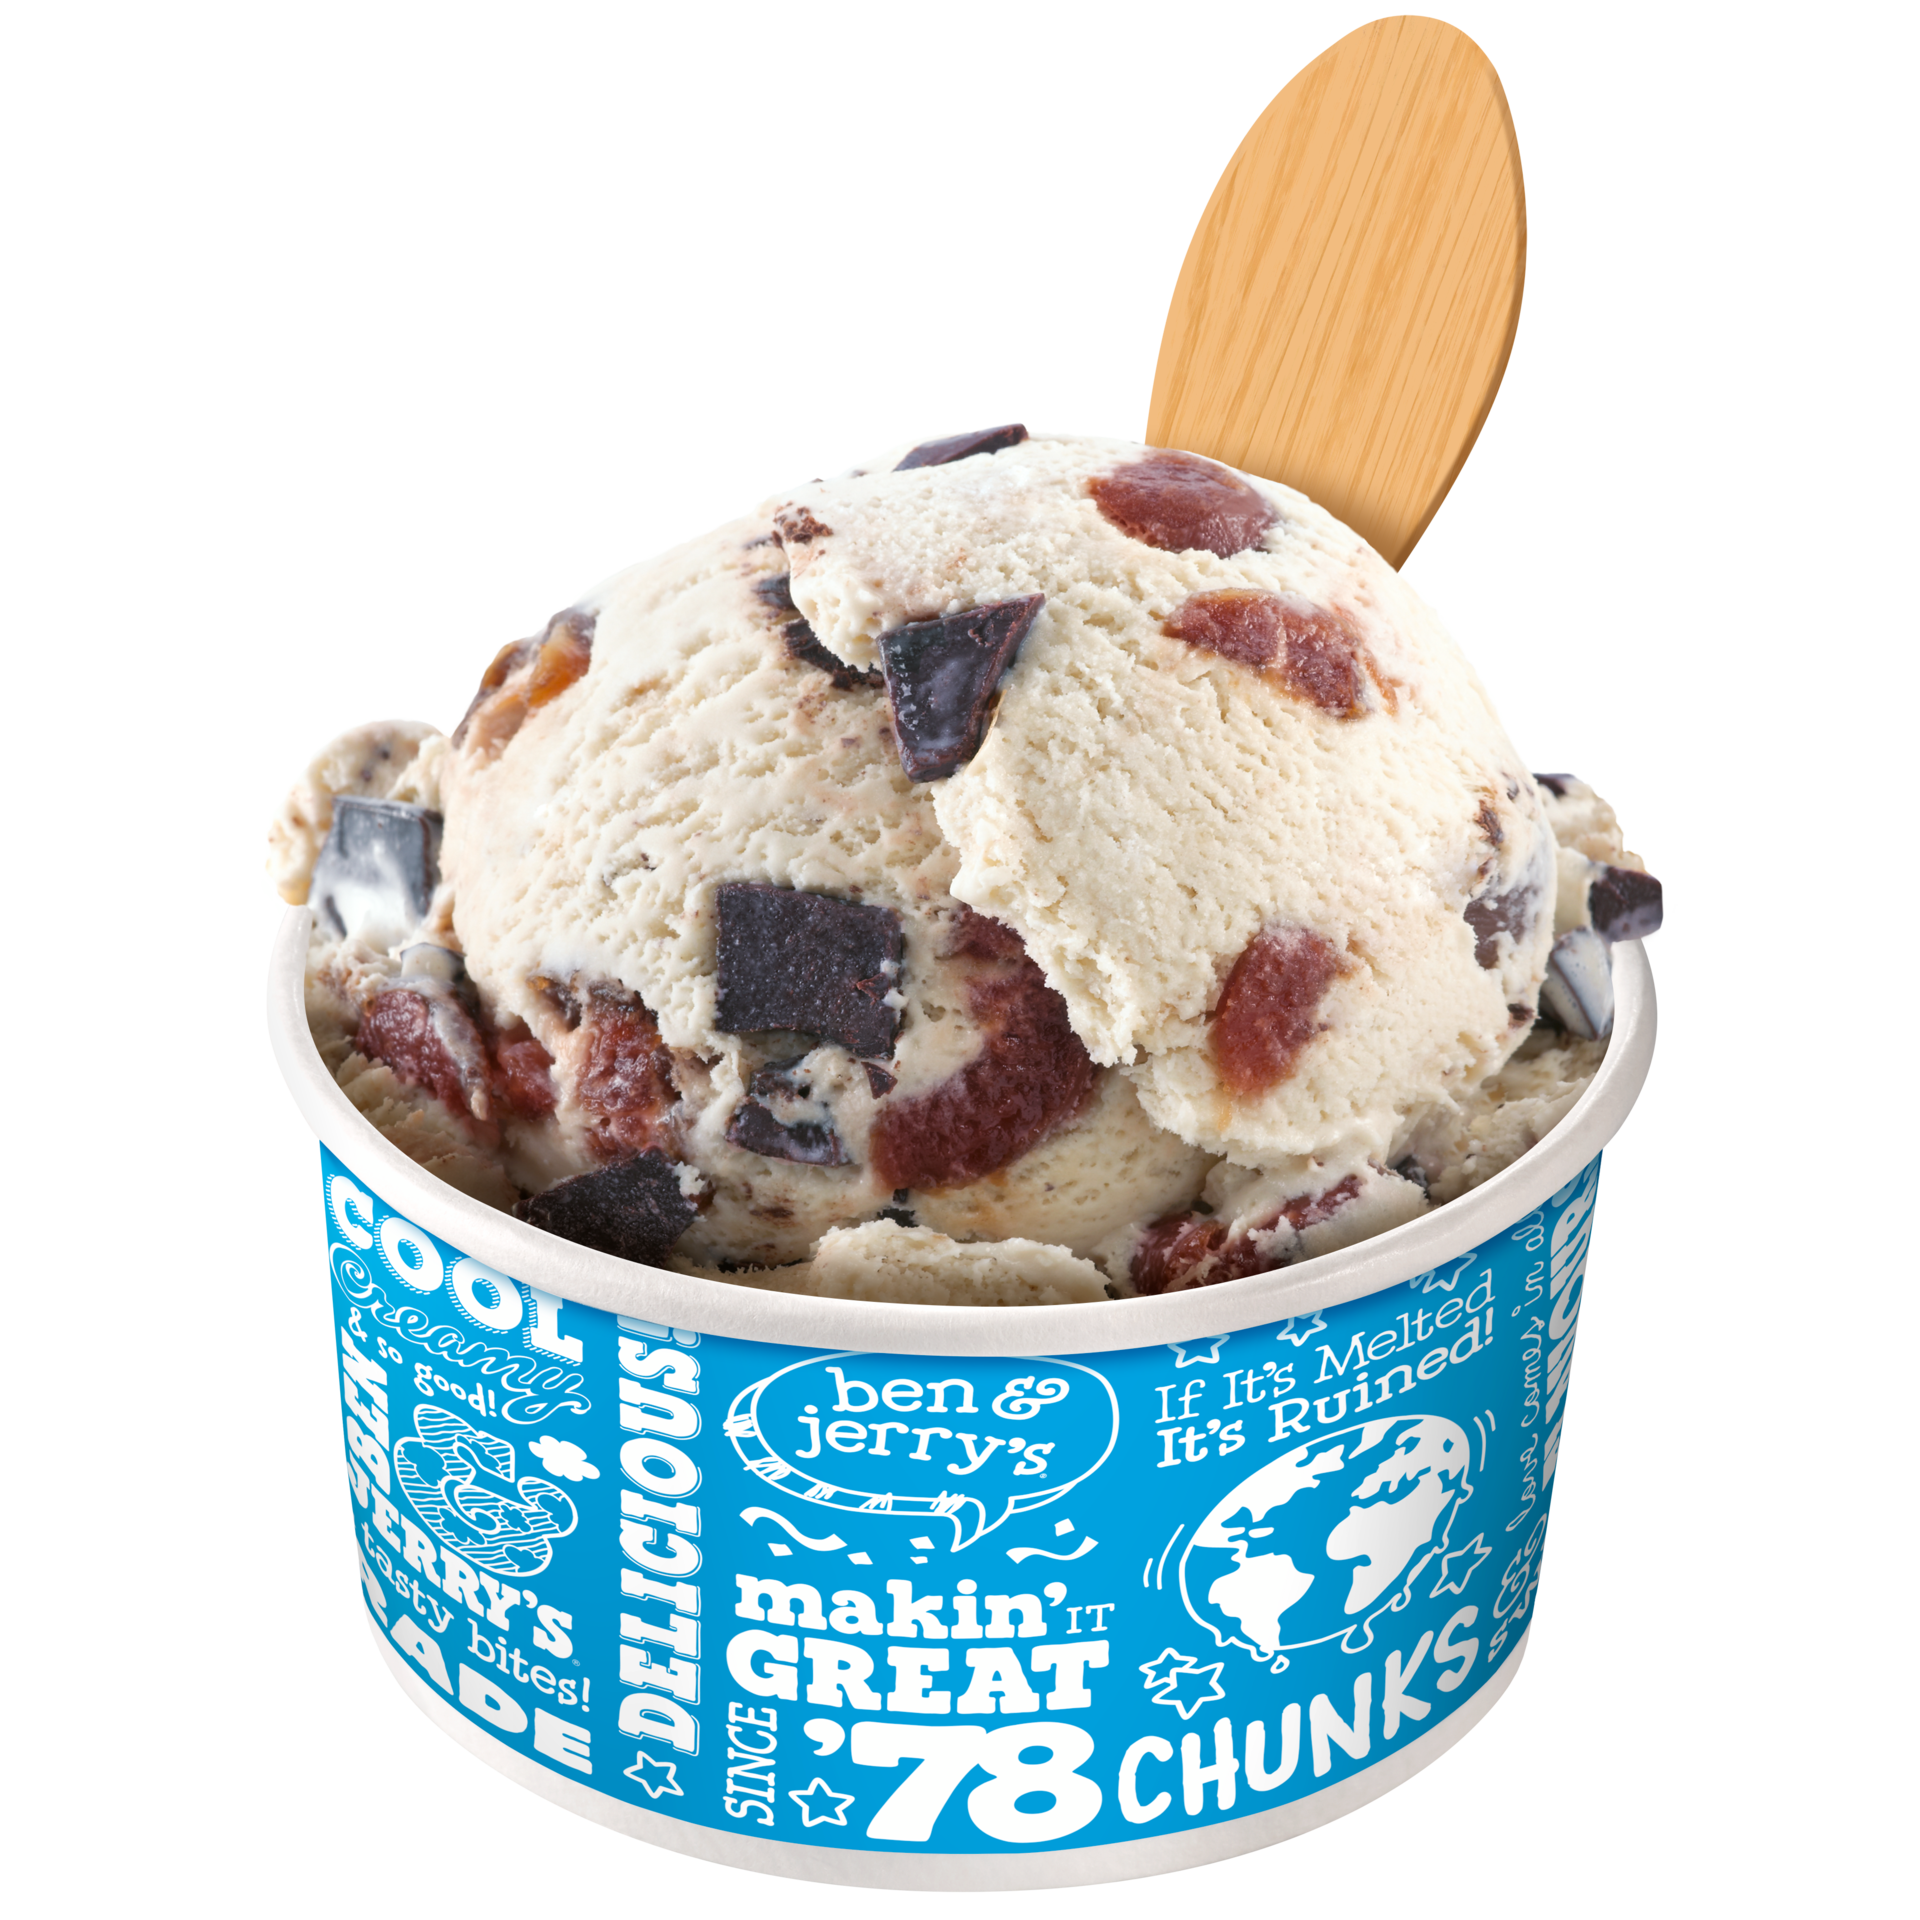 Cherry Garcia® Original Ice Cream Scoop Shops